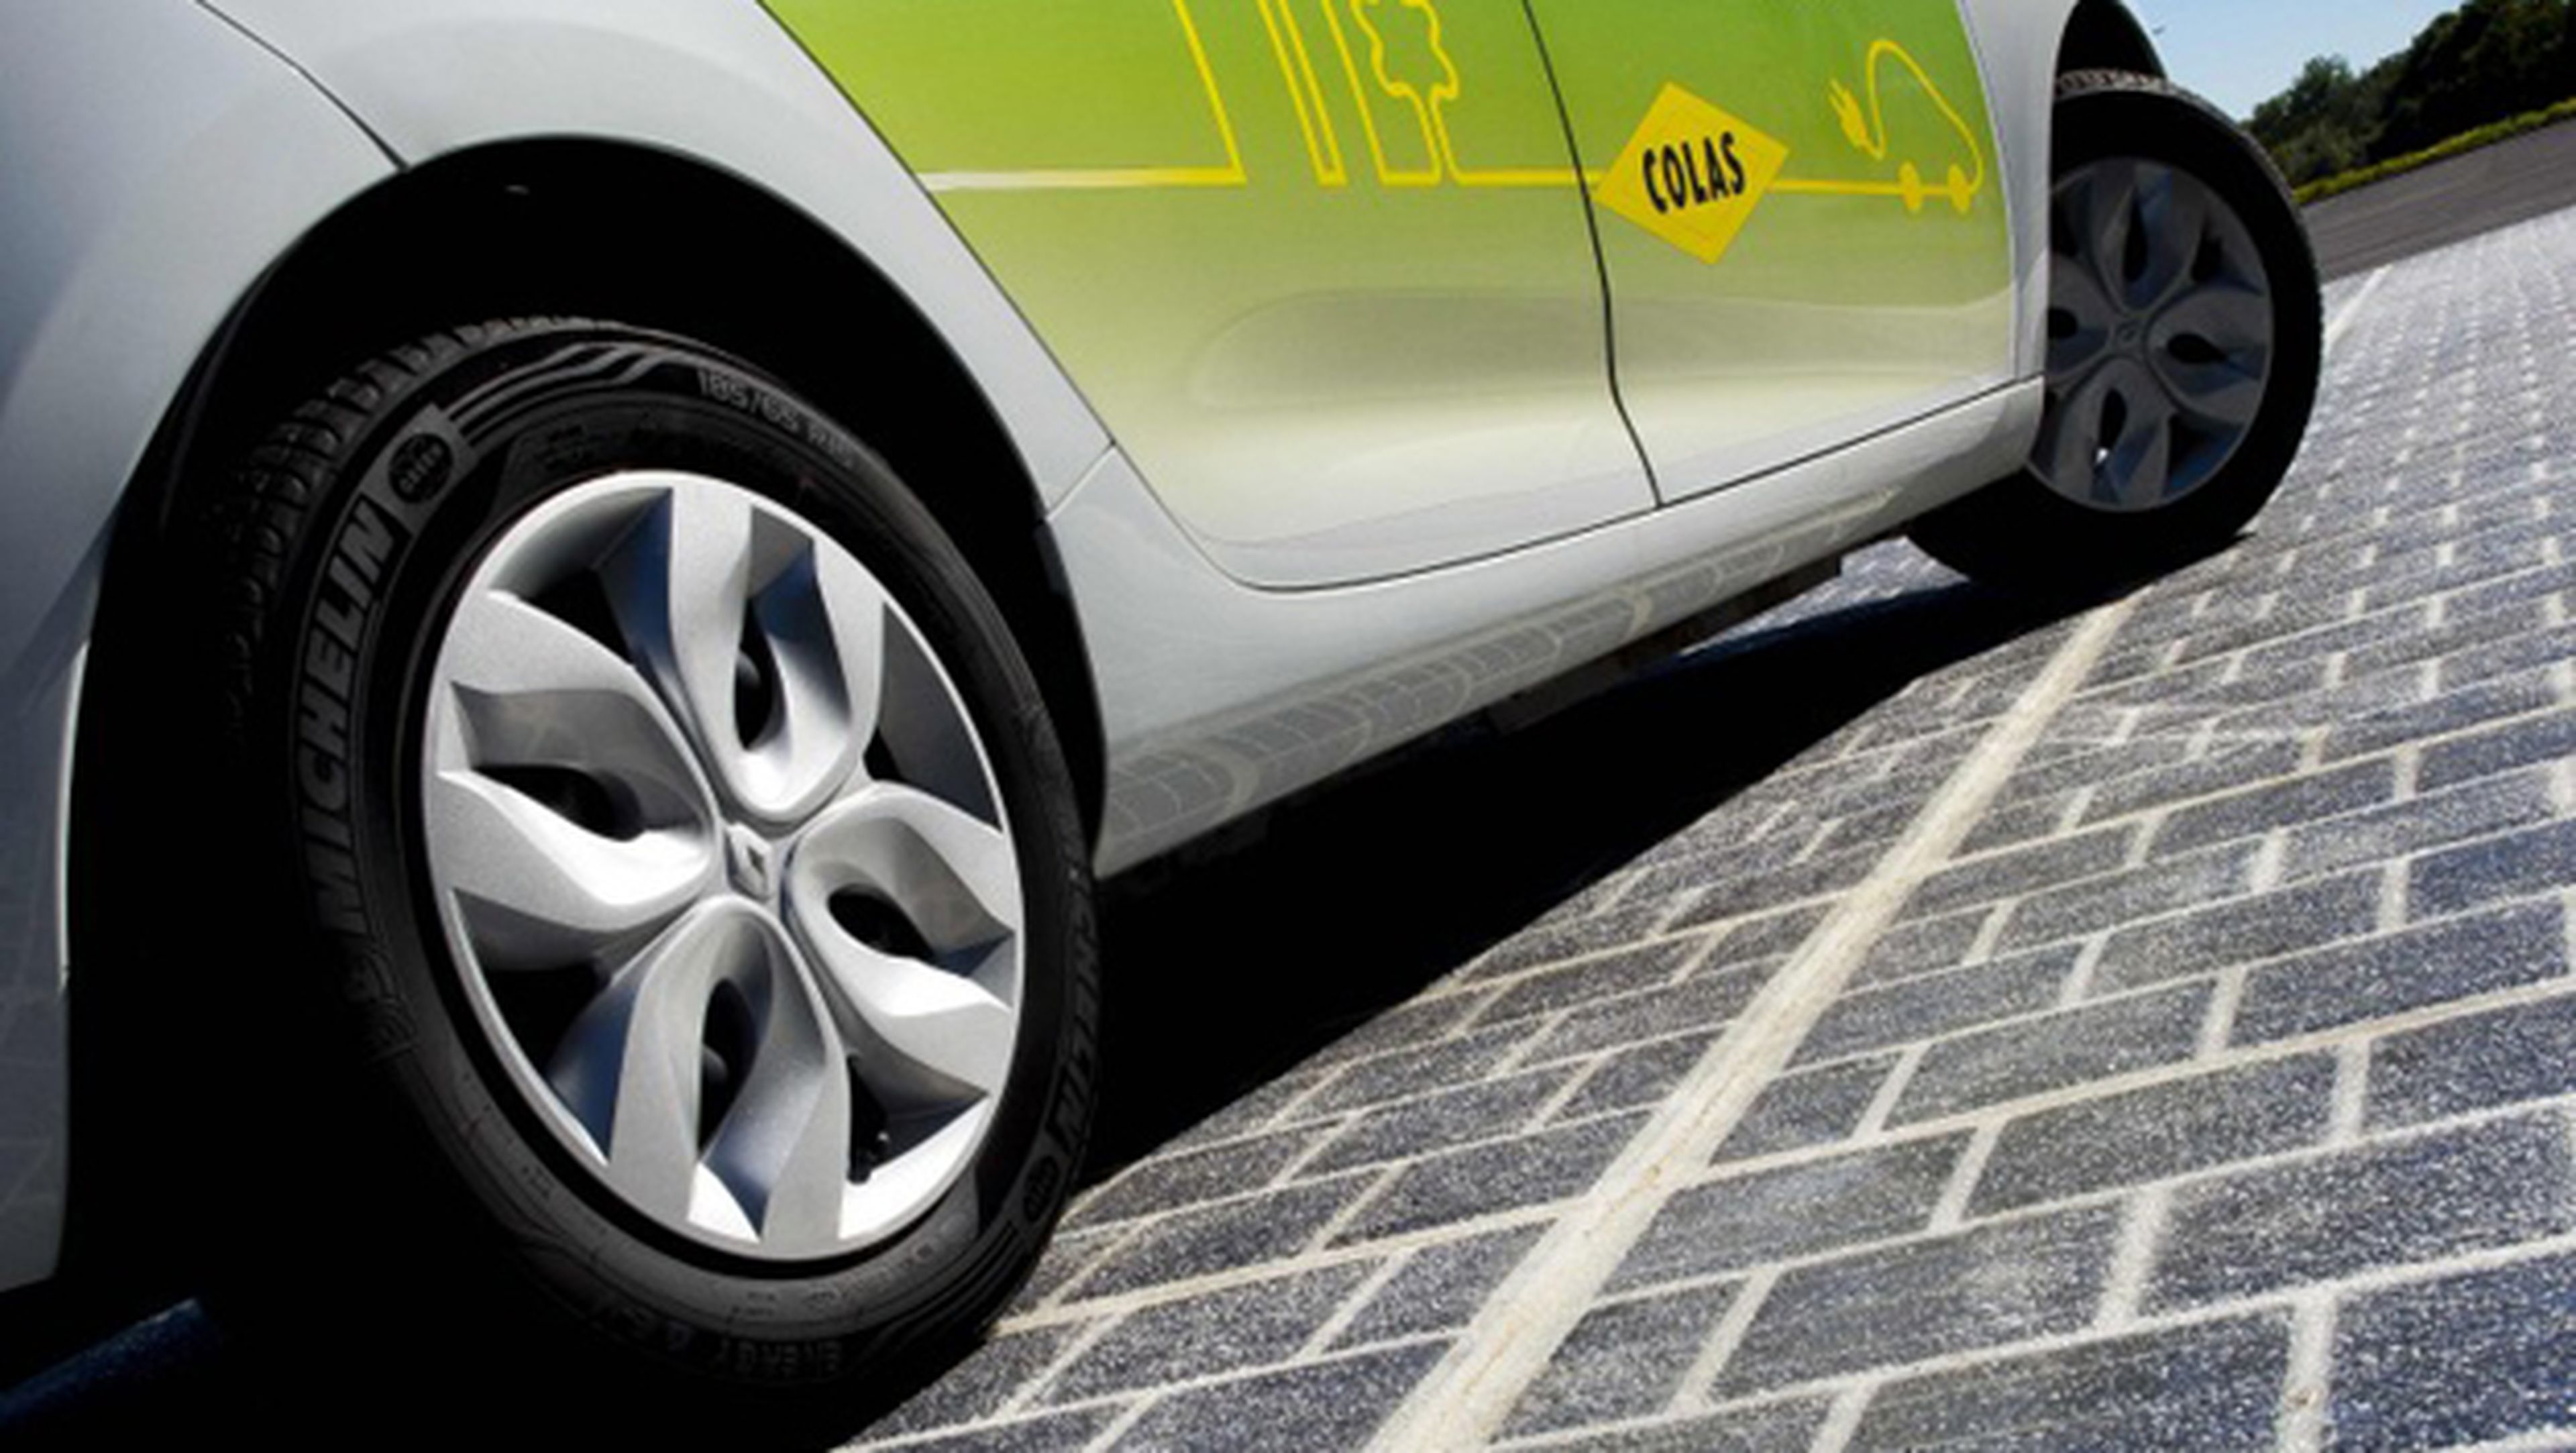 Carretera solar obtiene energía para cargar coches eléctricos